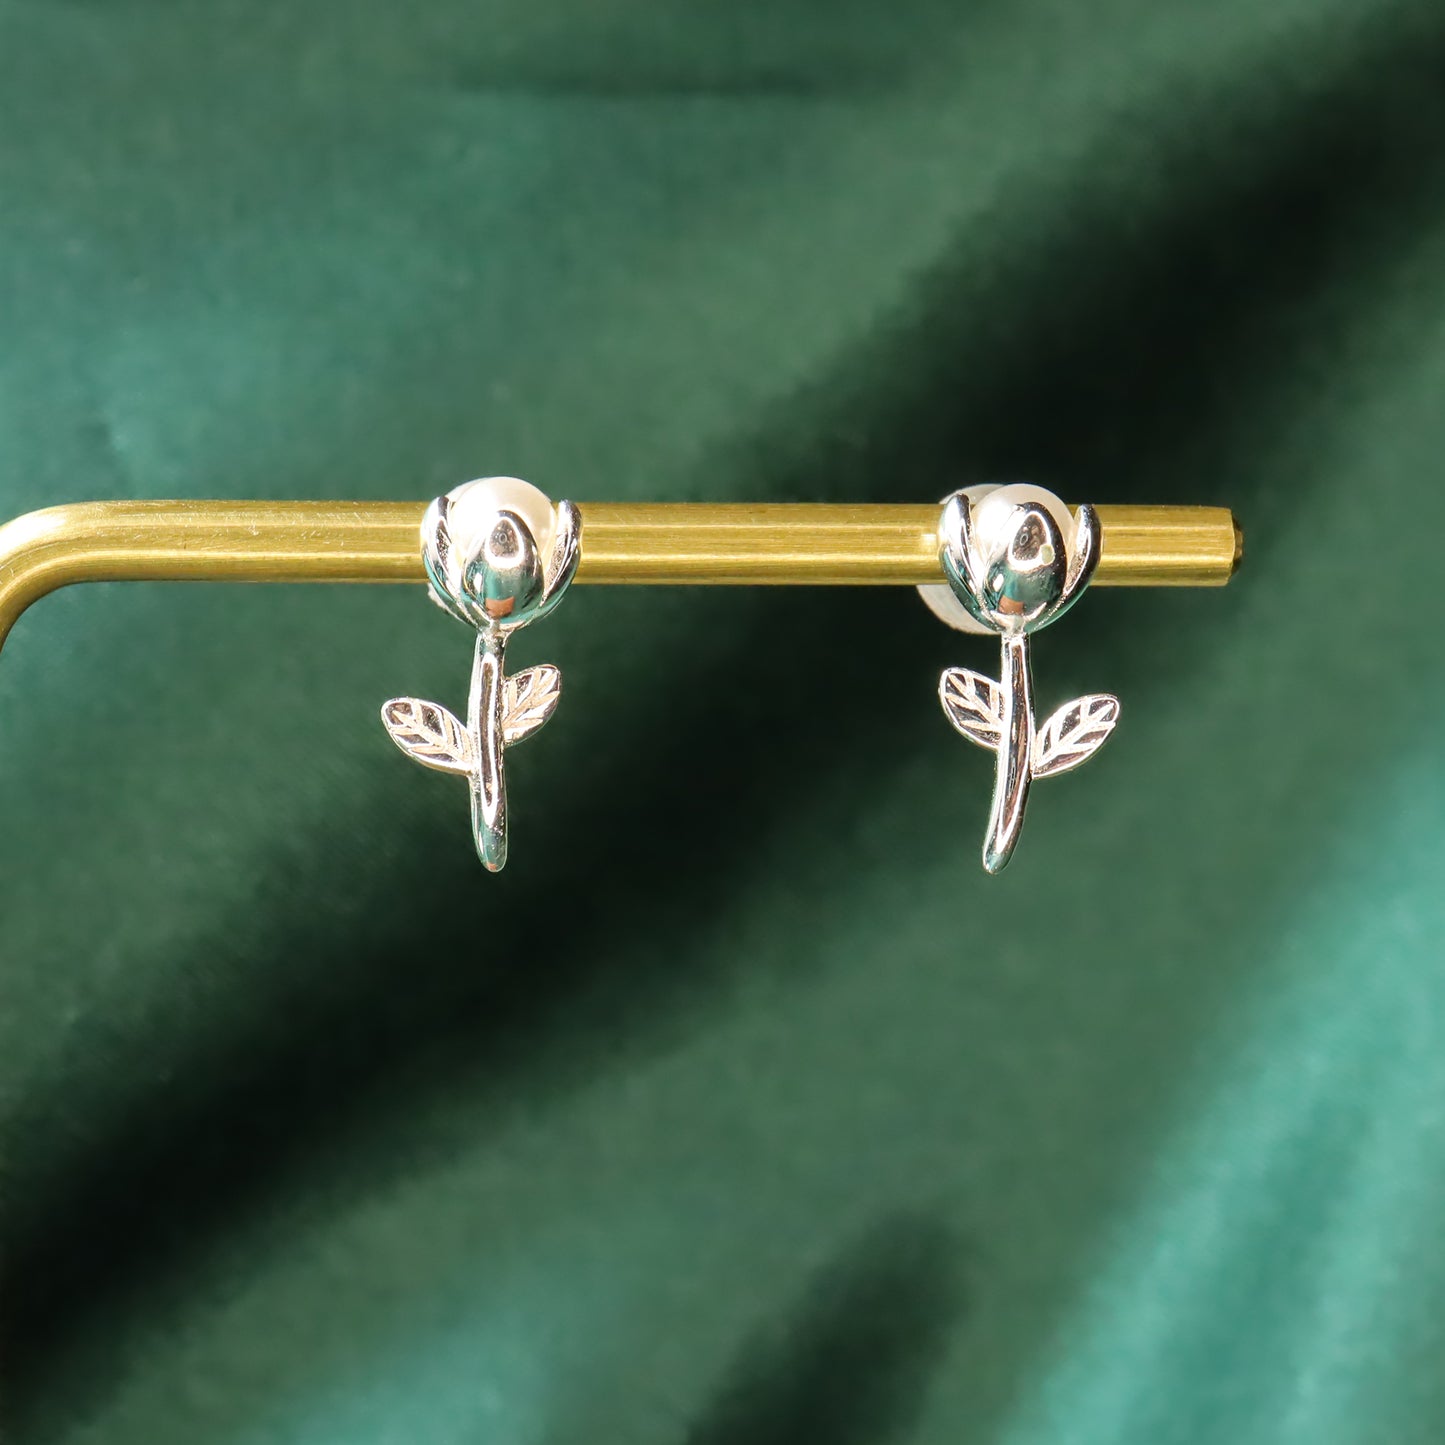 Pearl Rose - S925 Sterling Silver & Pearl Stud Earrings